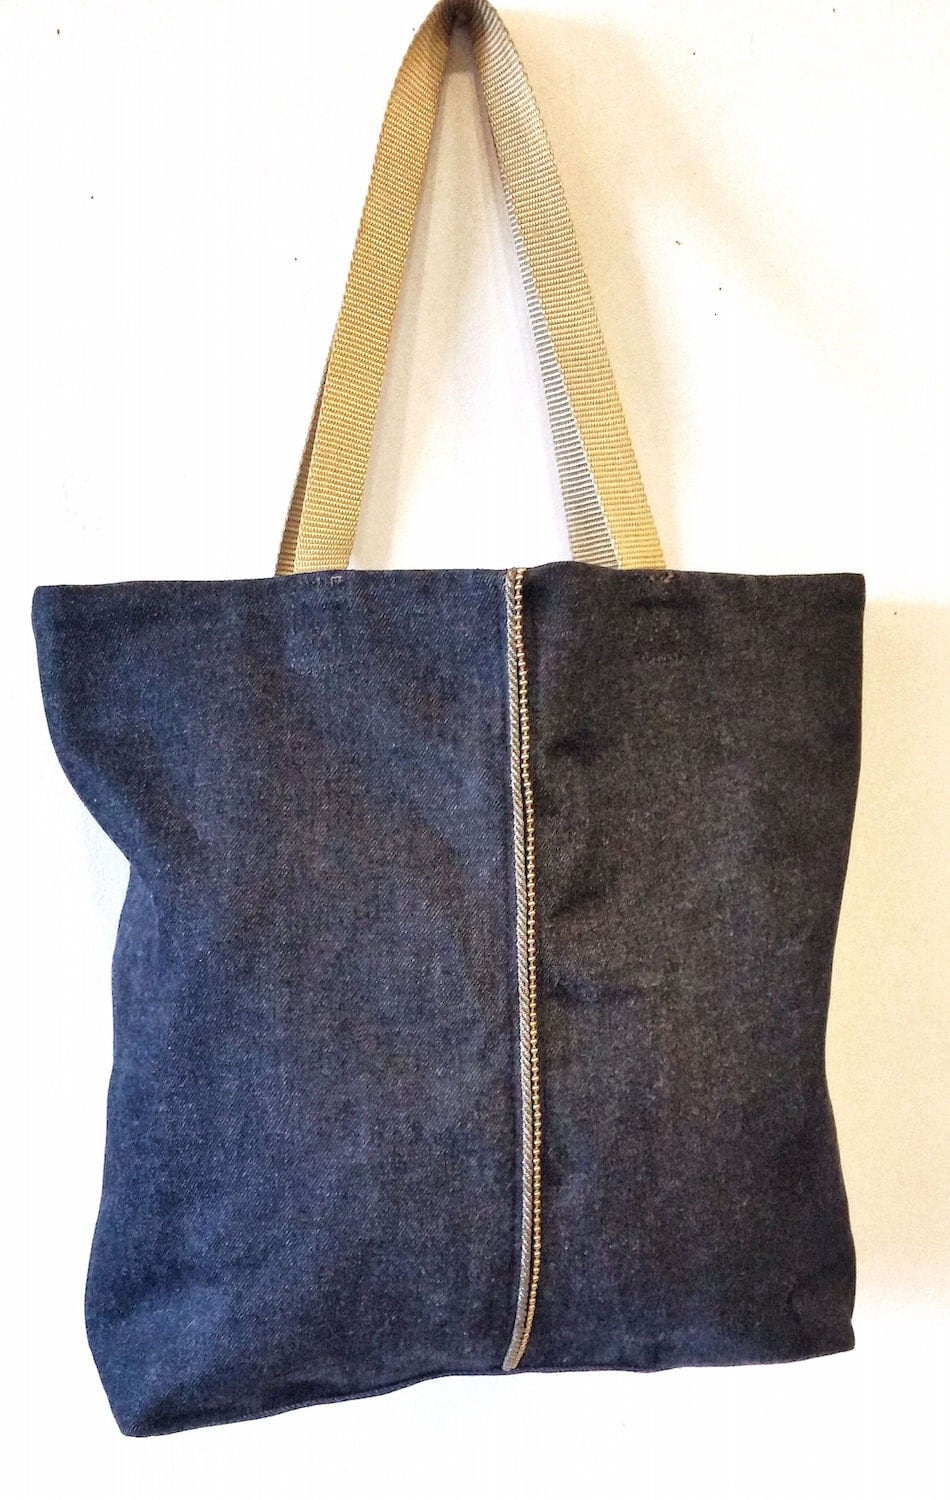 Small Denim Tote Bag Vegan Bag in Blue Denim with Bead Chain